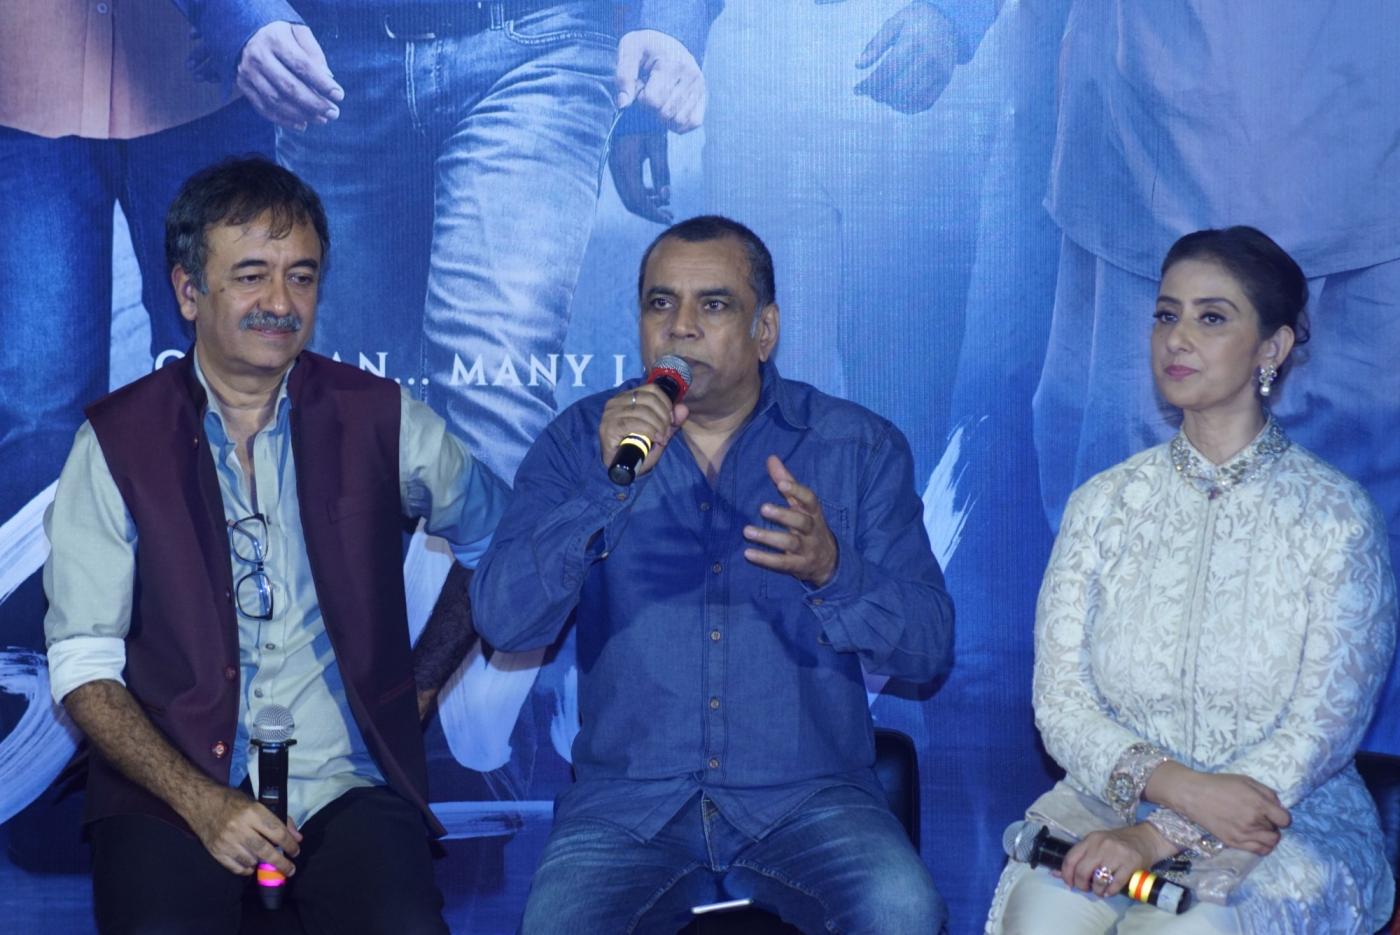 Mumbai: Producer Rajkumar Hirani with actors Paresh Rawal and Manisha Koirala at the trailer launch of their upcoming film "Sanju", in Mumbai on May 30, 2018. (Photo: IANS) by .